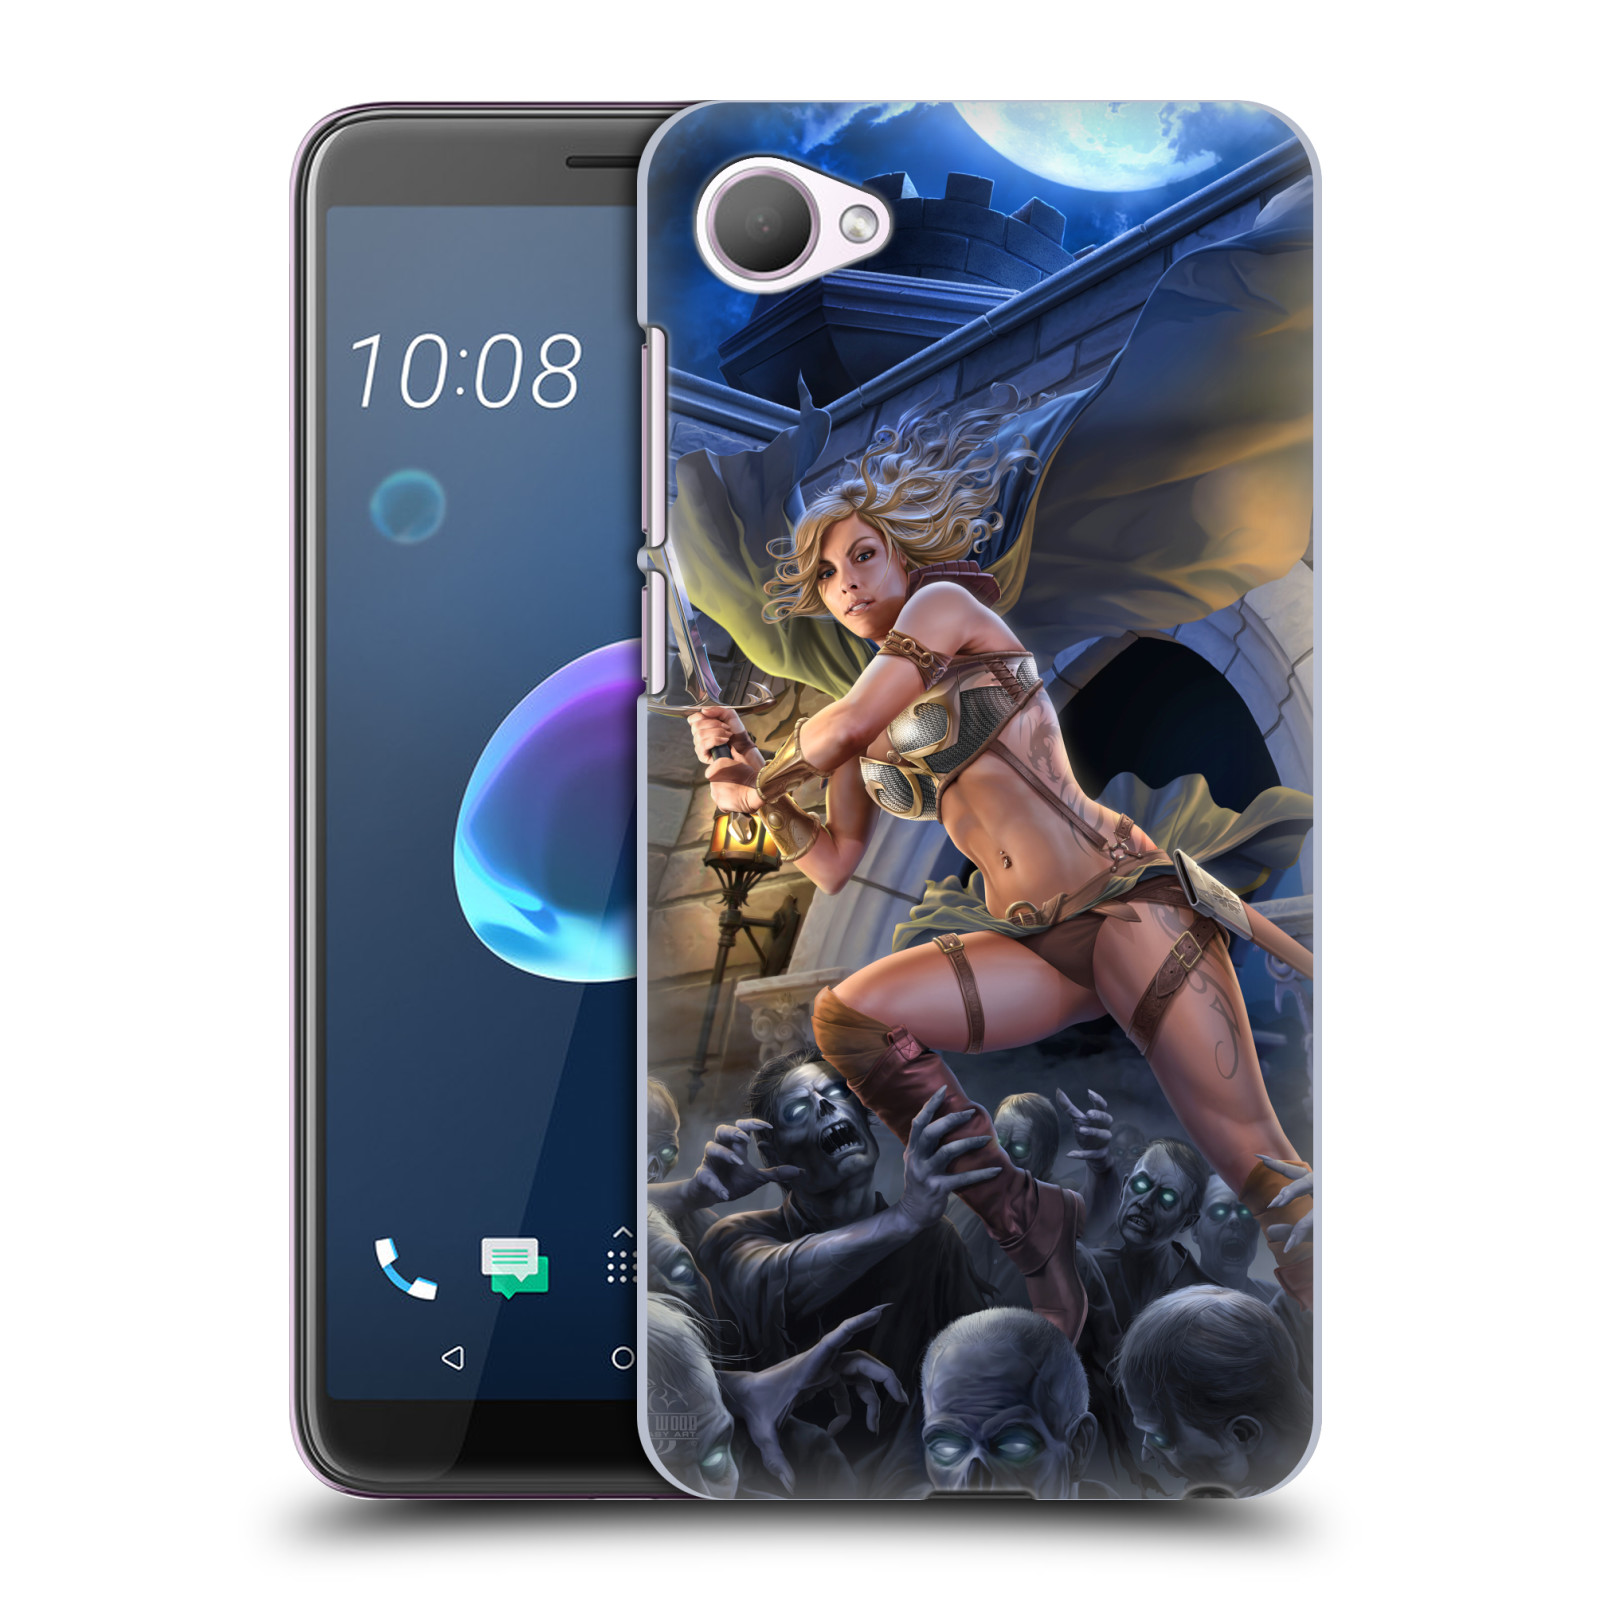 Pouzdro na mobil HTC Desire 12 / Desire 12 DUAL SIM - HEAD CASE - Fantasy kresby Tom Wood - Princezna bojovnice a zombies